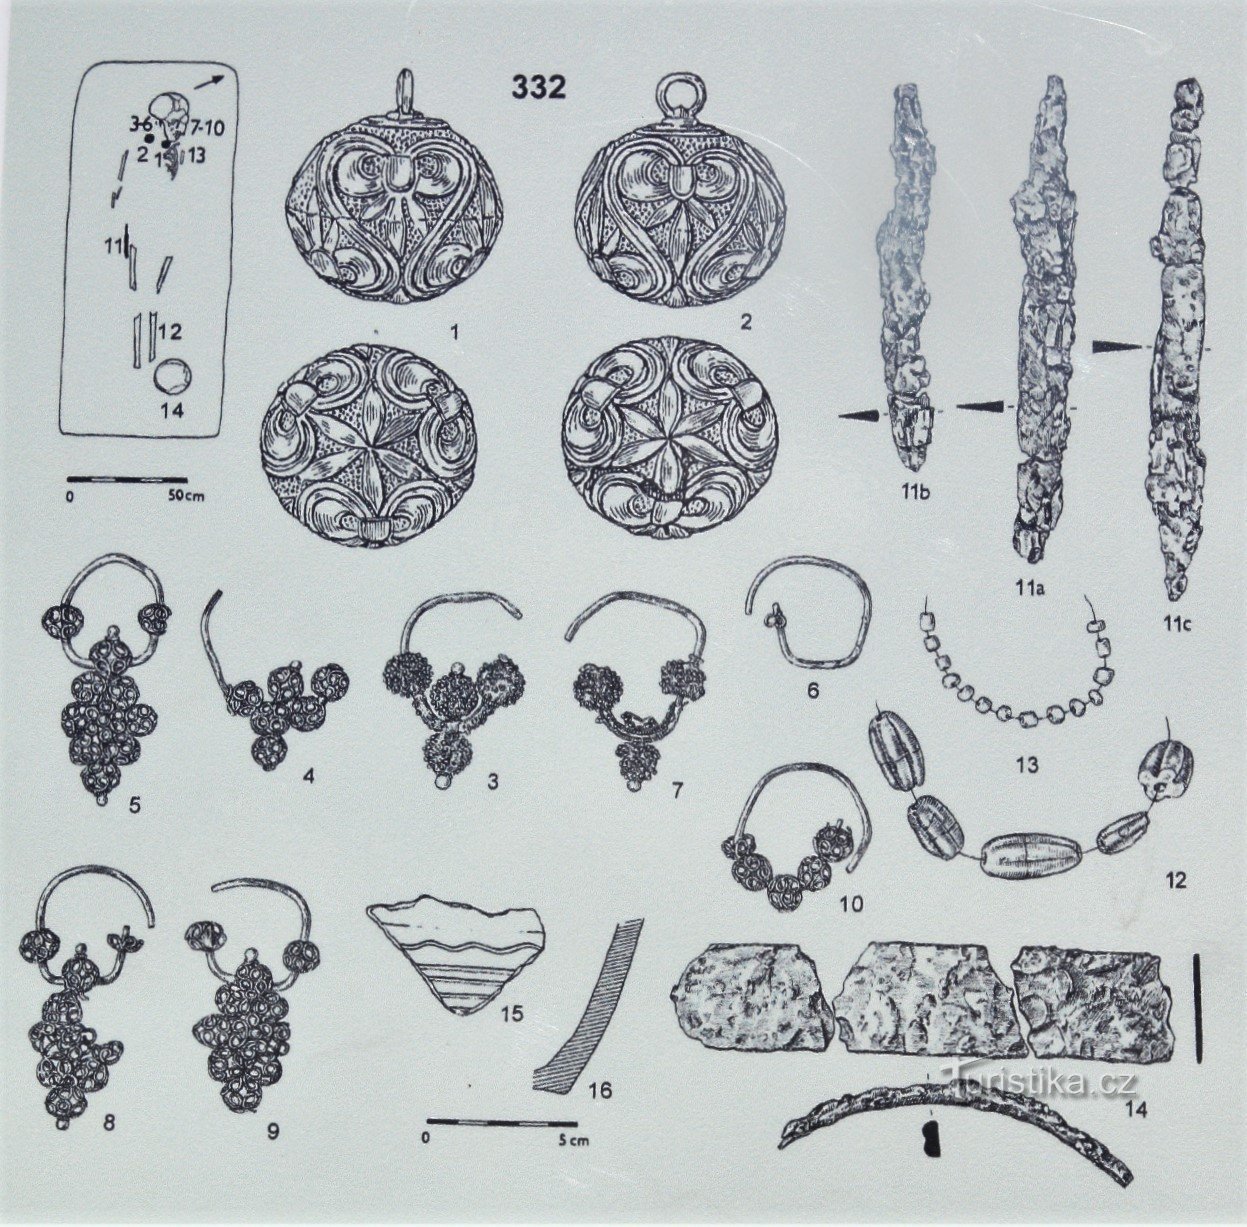 Descoperiri de bijuterii din săpături aici (luate din panoul informativ)